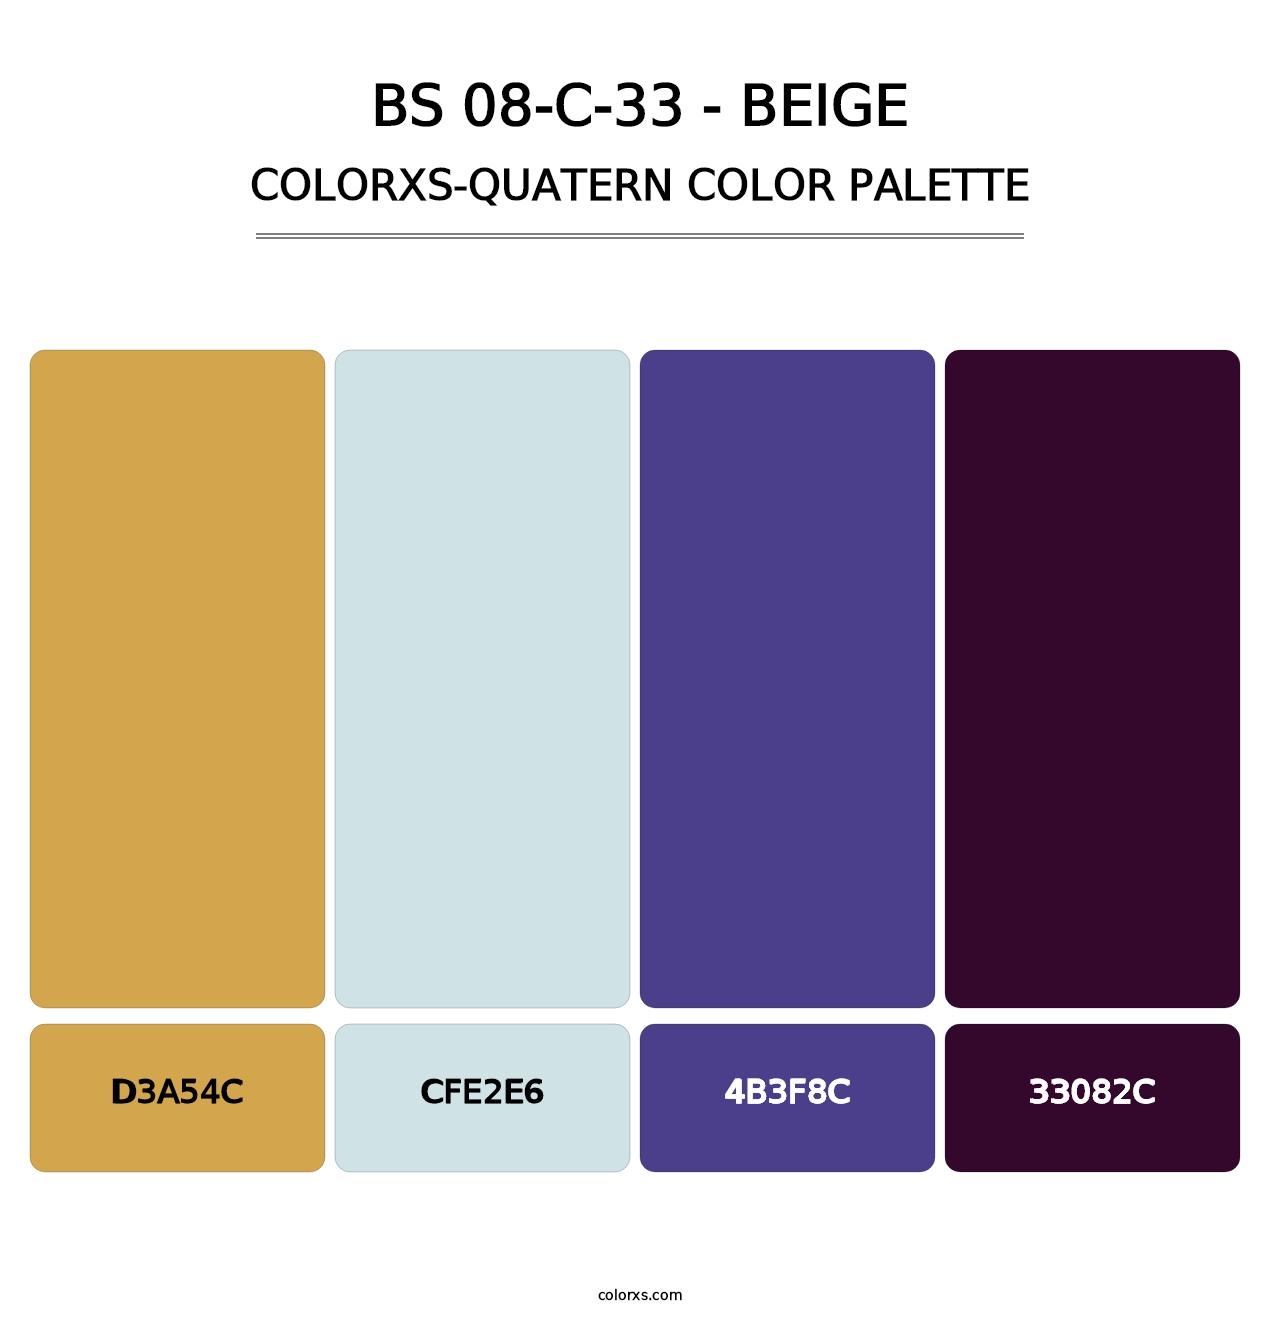 BS 08-C-33 - Beige - Colorxs Quatern Palette